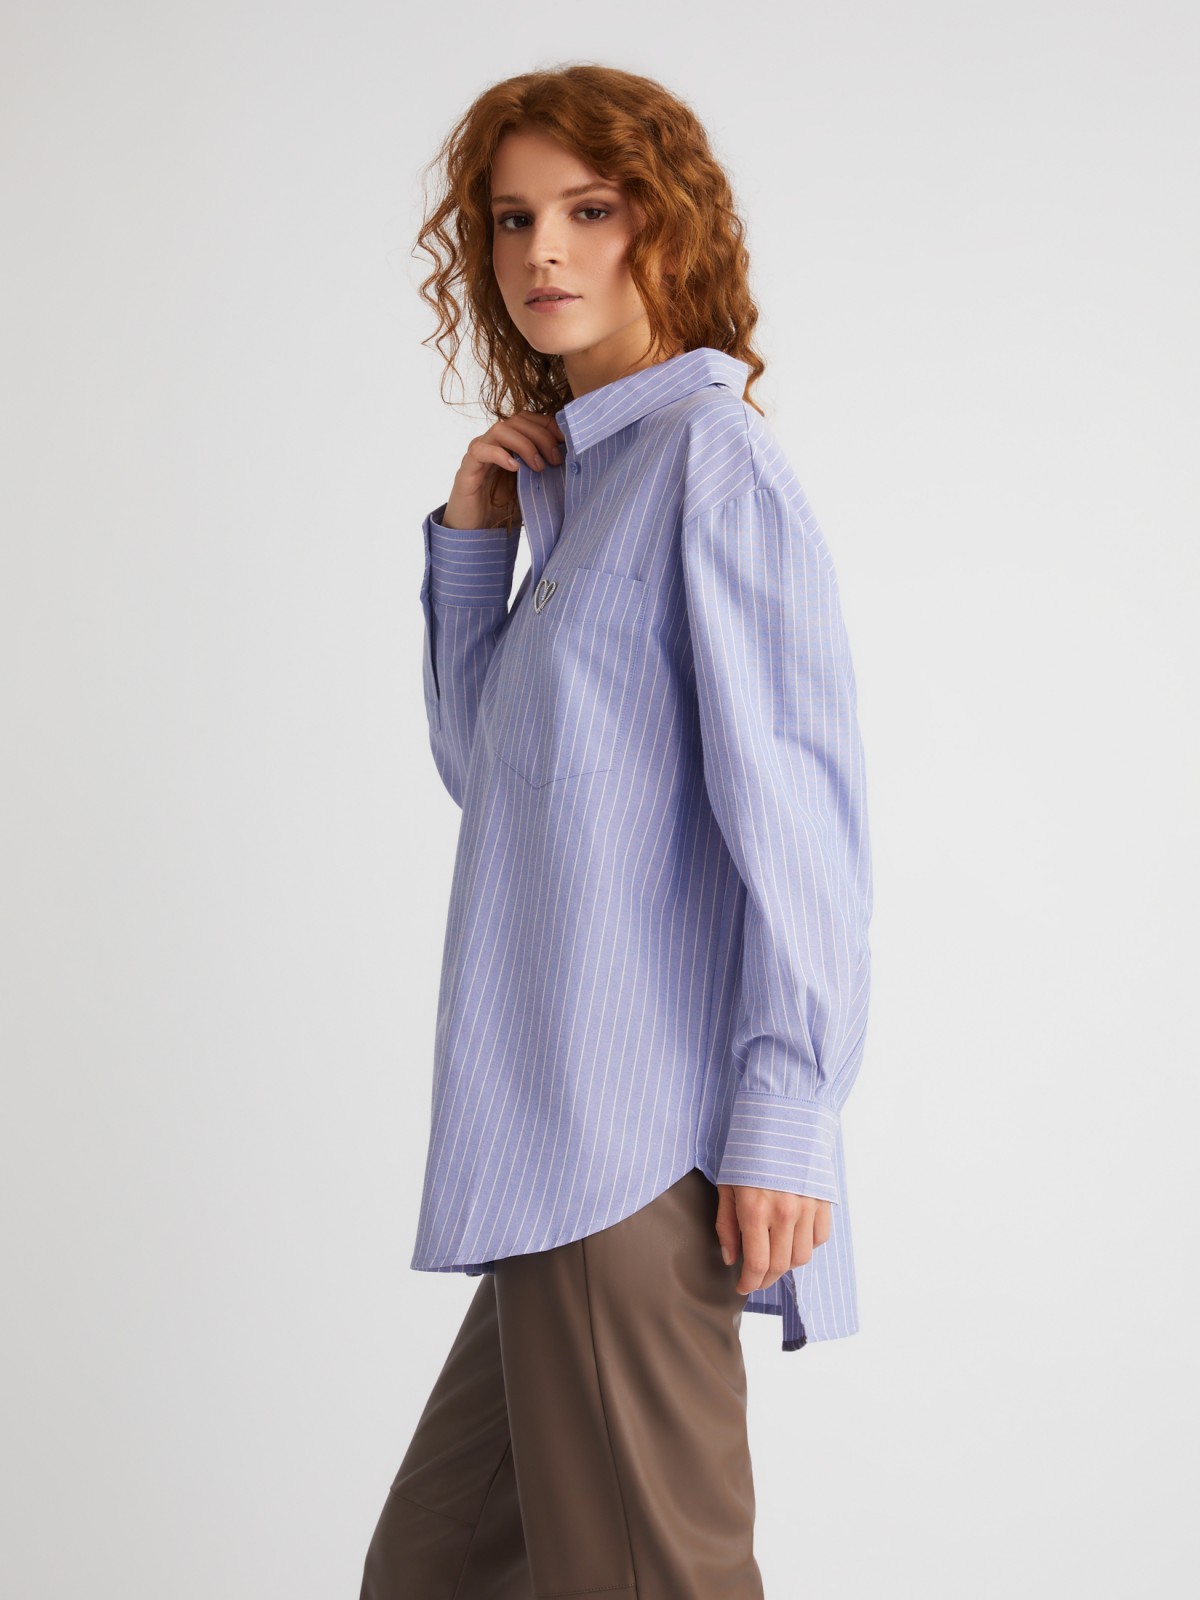 Офисная рубашка оверсайз силуэта в полоску с декоративной брошью zolla 023331162073, цвет светло-голубой, размер XS - фото 3